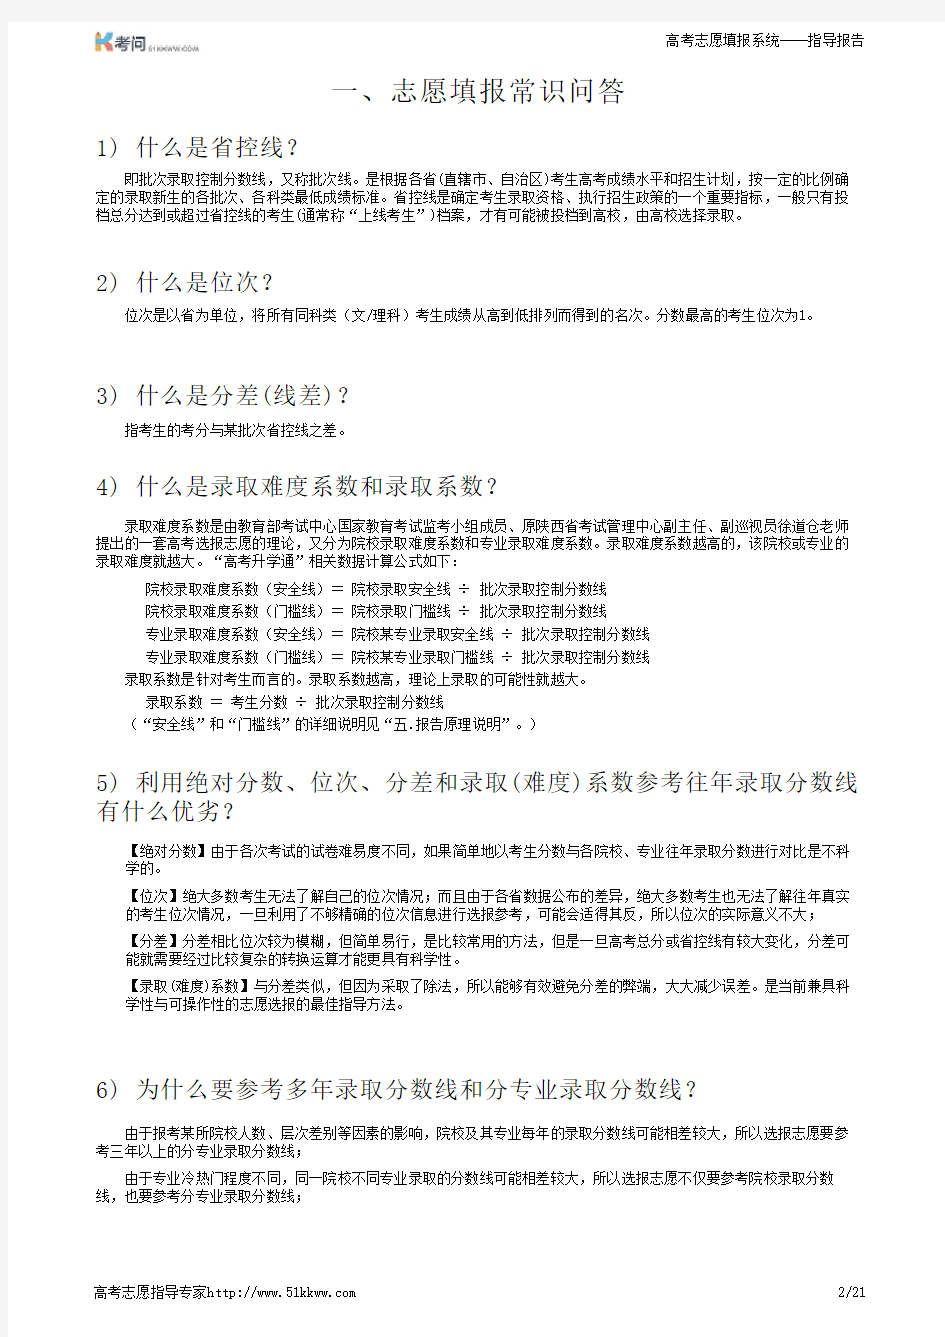 2015年上海考问网高考志愿填报指导报告